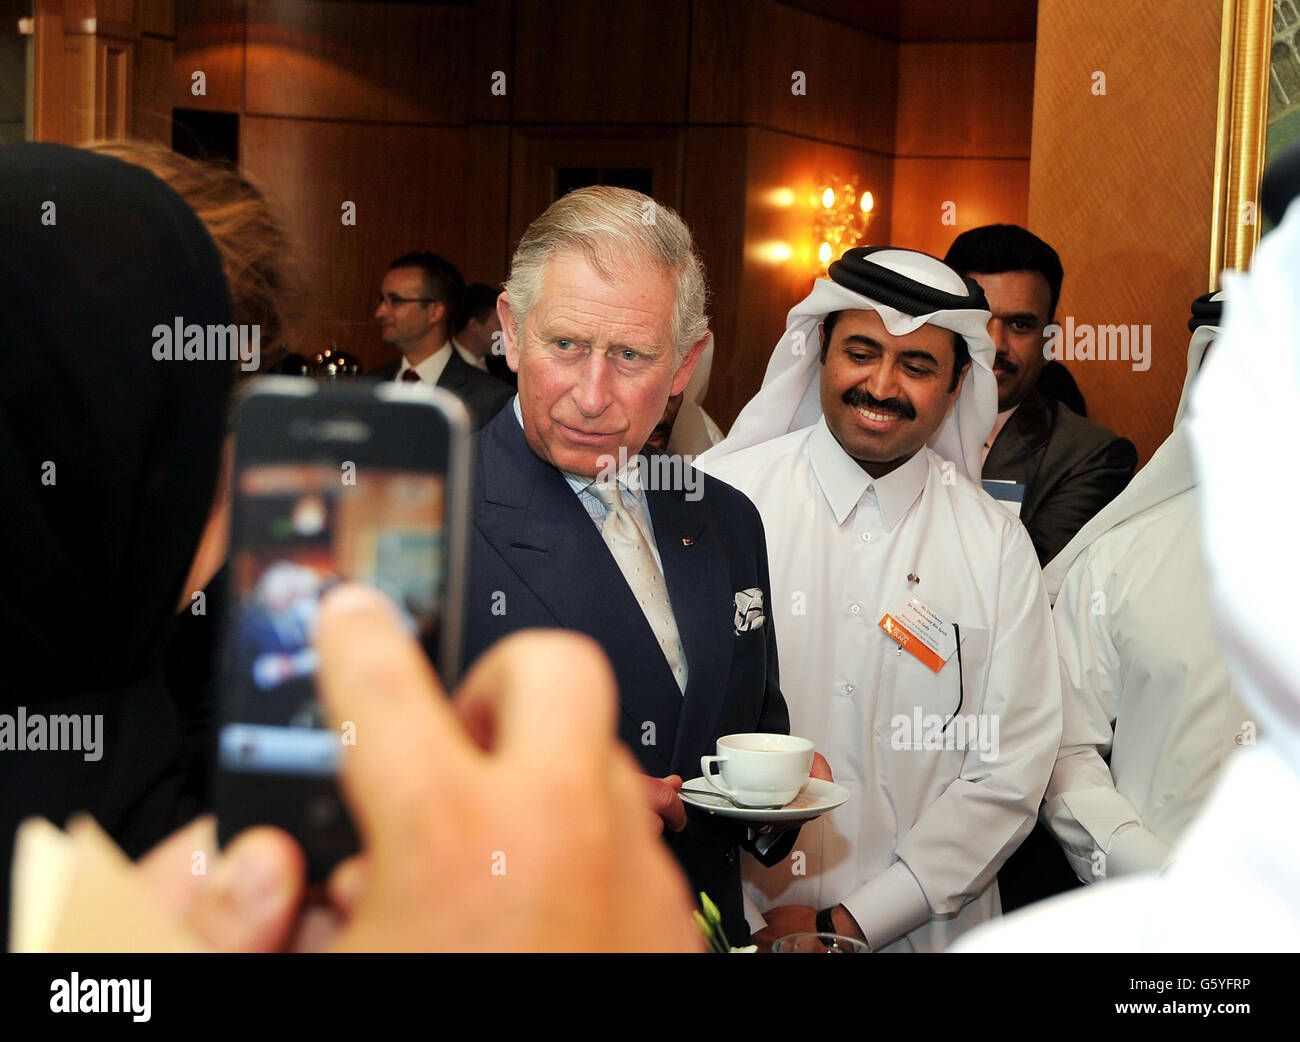 Le Prince de Galles parle à de jeunes gens qatari qui étaient d'anciens étudiants au Royaume-Uni, lors d'une réception à l'hôtel four Seasons de Doha, la capitale du Qatar, au Moyen-Orient. Banque D'Images